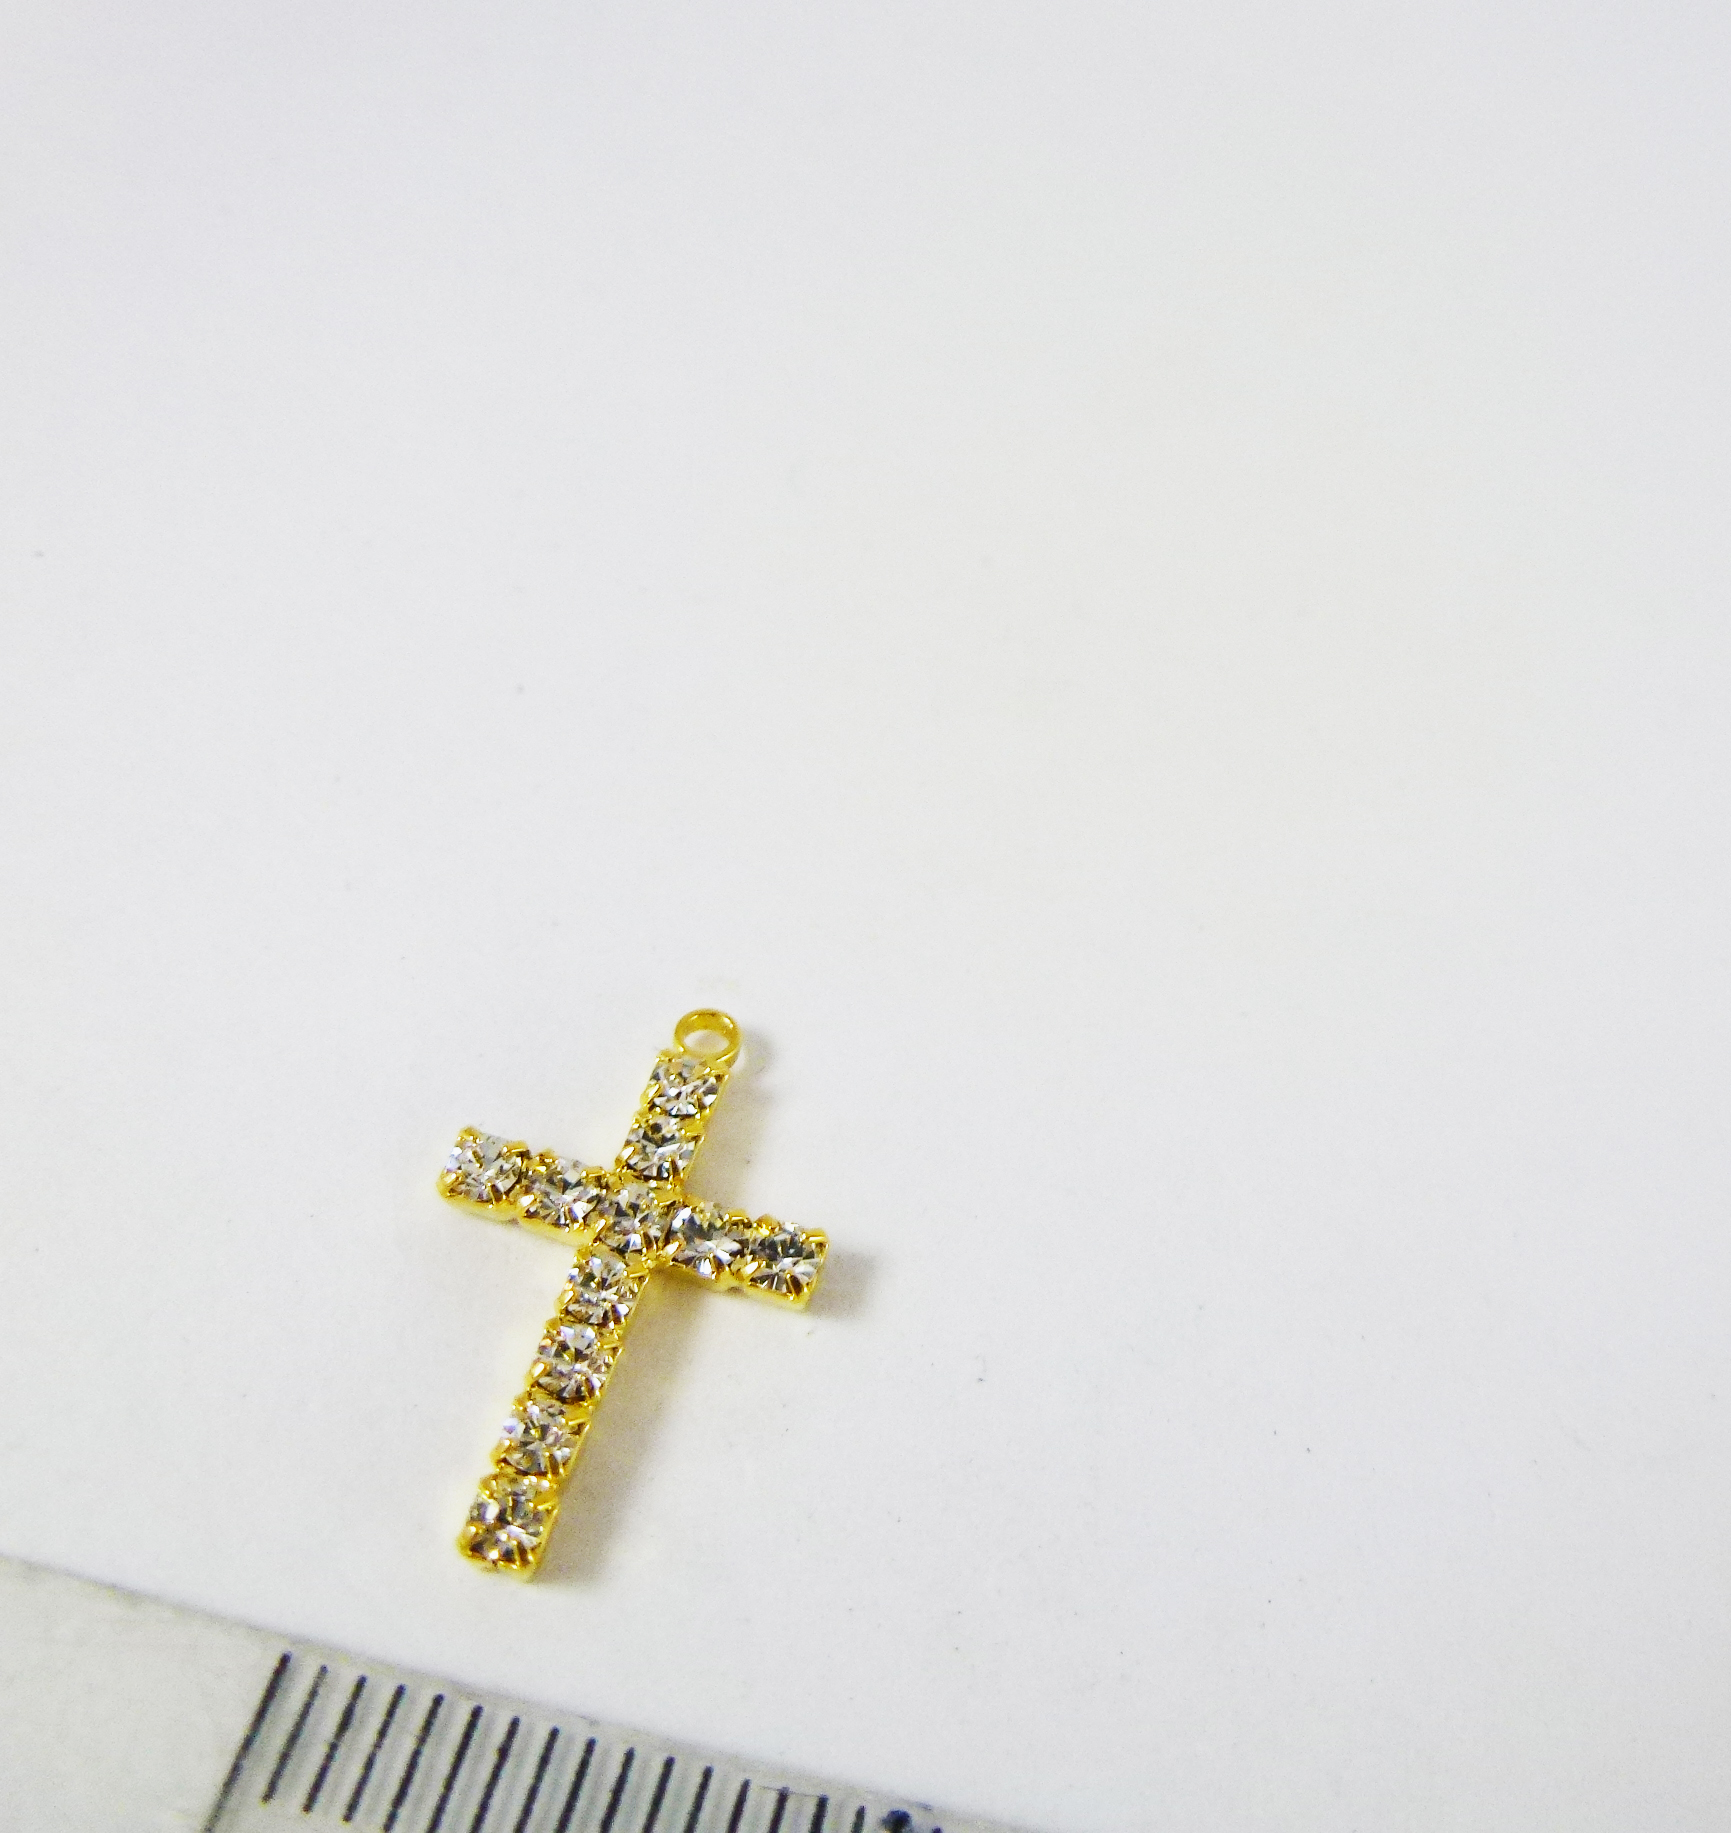 銅鍍金色單孔鑲鑽十字架